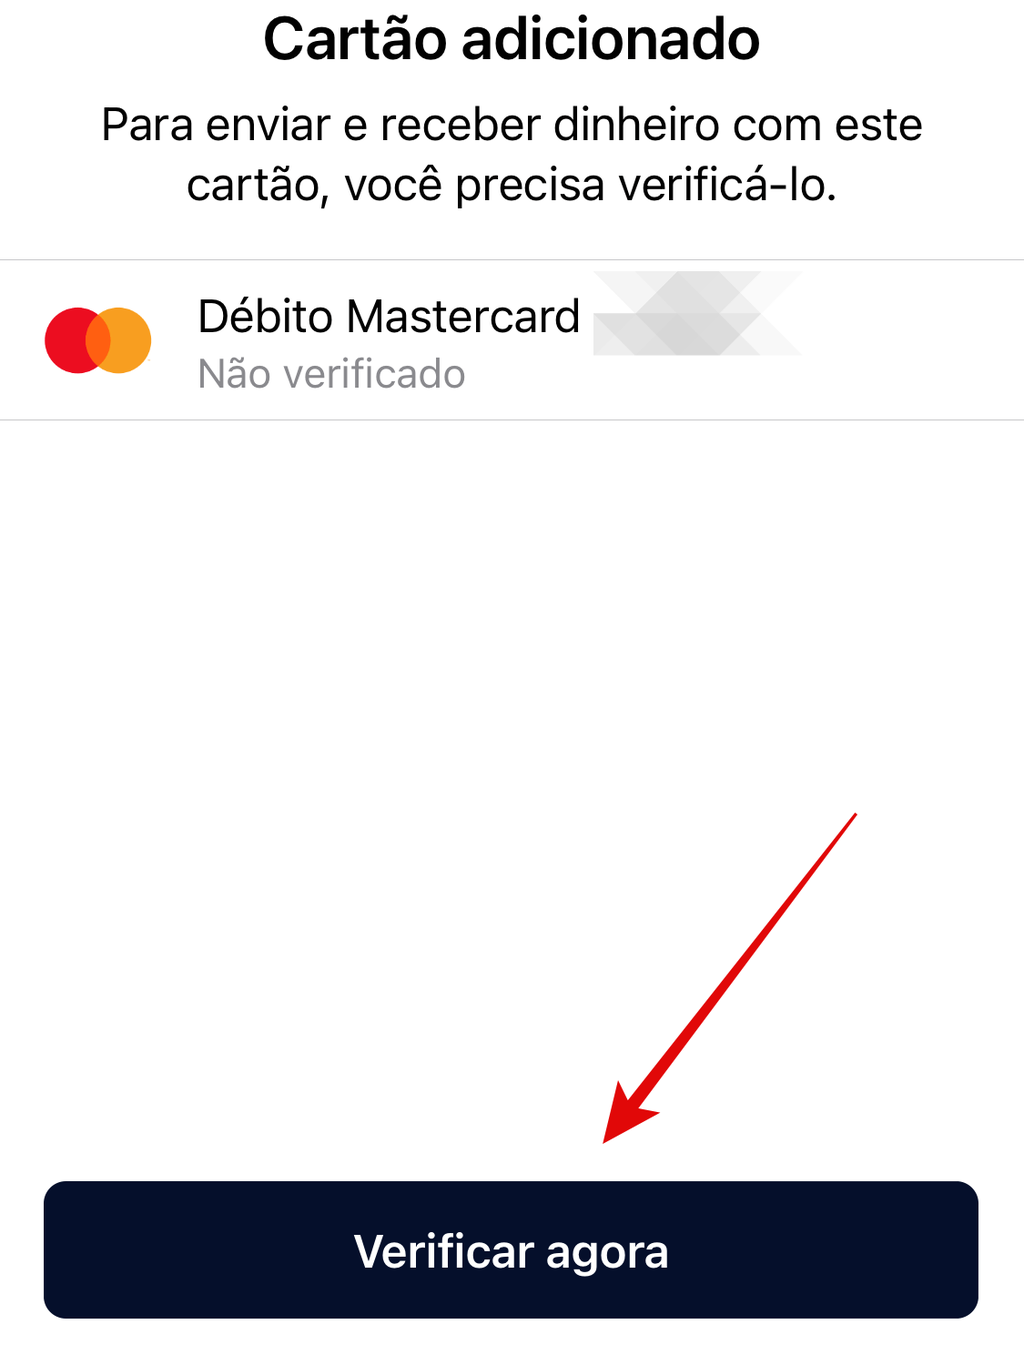 Verifique a sua conta para começar a usar os serviços de pagamento do WhatsApp Pay(Imagem: Guadalupe Carniel/Captura de tela)